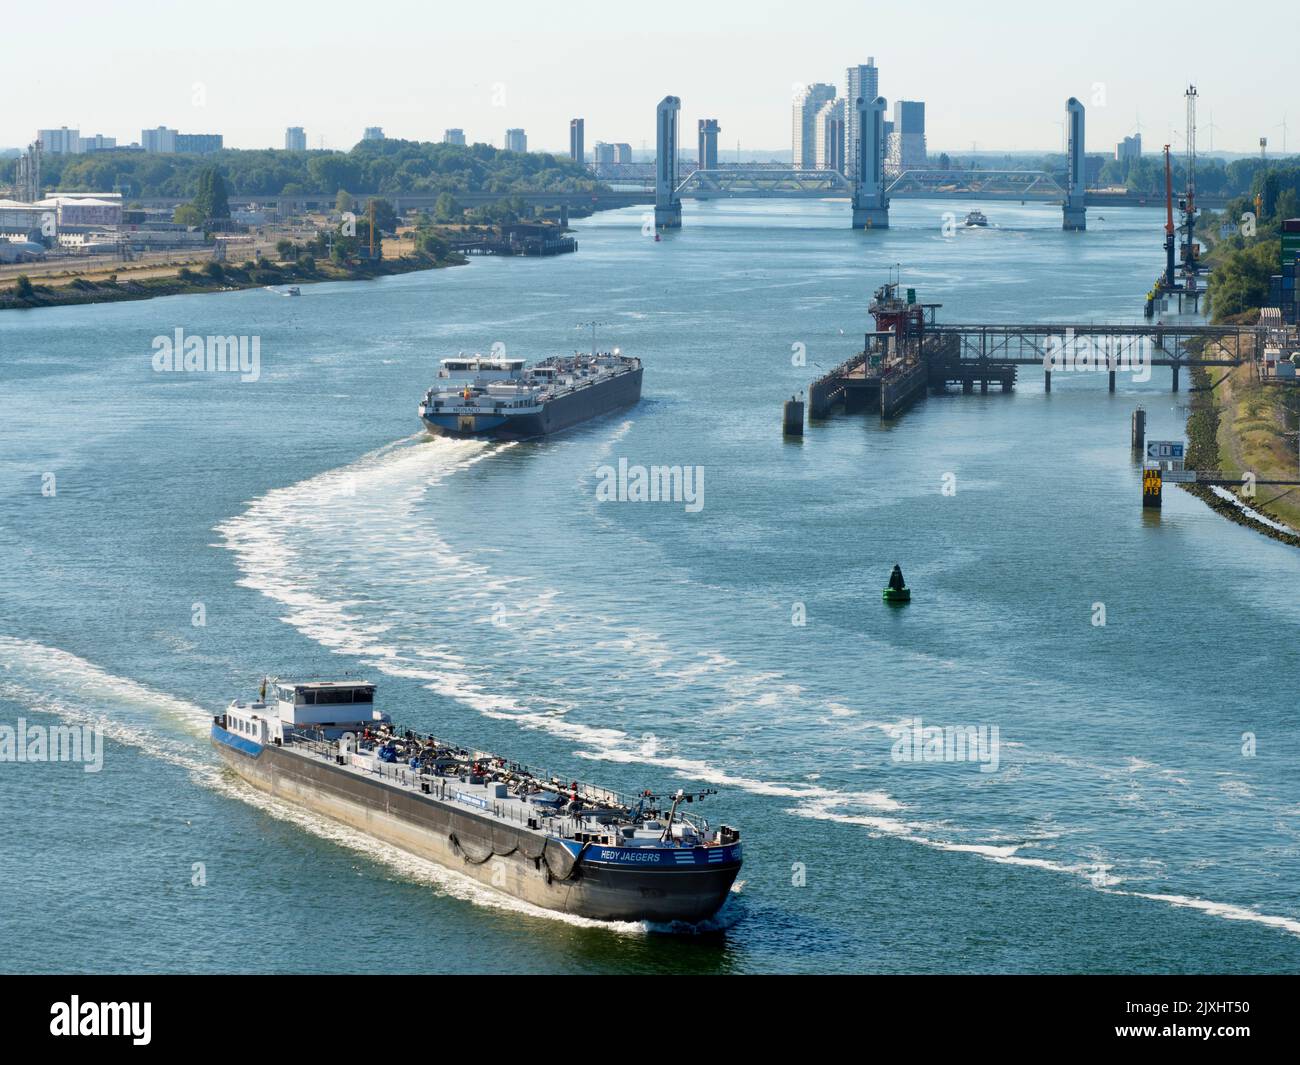 El puerto de Rotterdam es el puerto marítimo más grande de Europa, y el más grande del mundo fuera de Asia, su escala es simplemente alucinante, con una superficie de 105 ki cuadrados Foto de stock